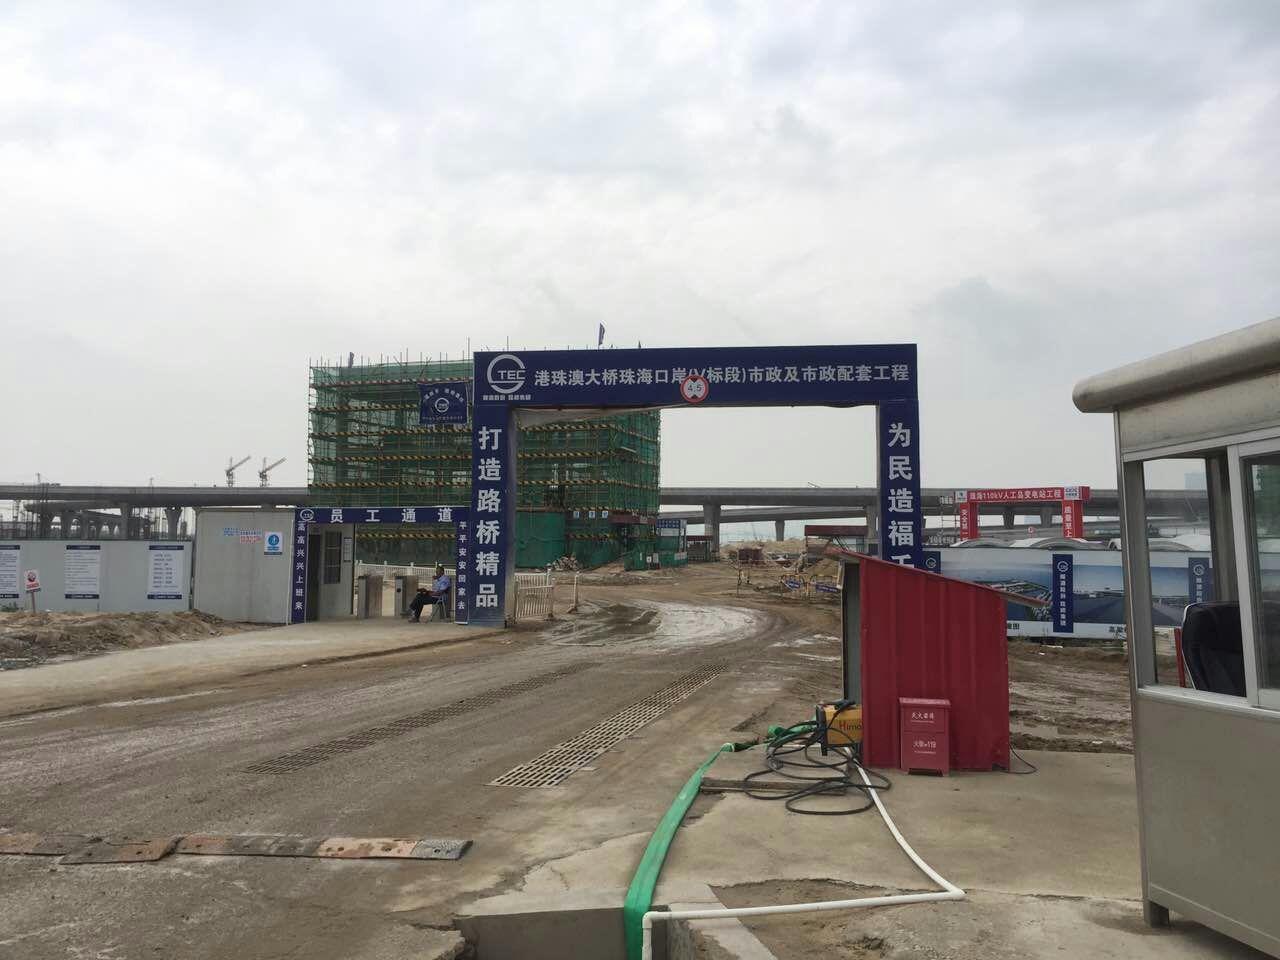 纤维增强型桥面防水涂料 广州艺佰涂科技有限公司